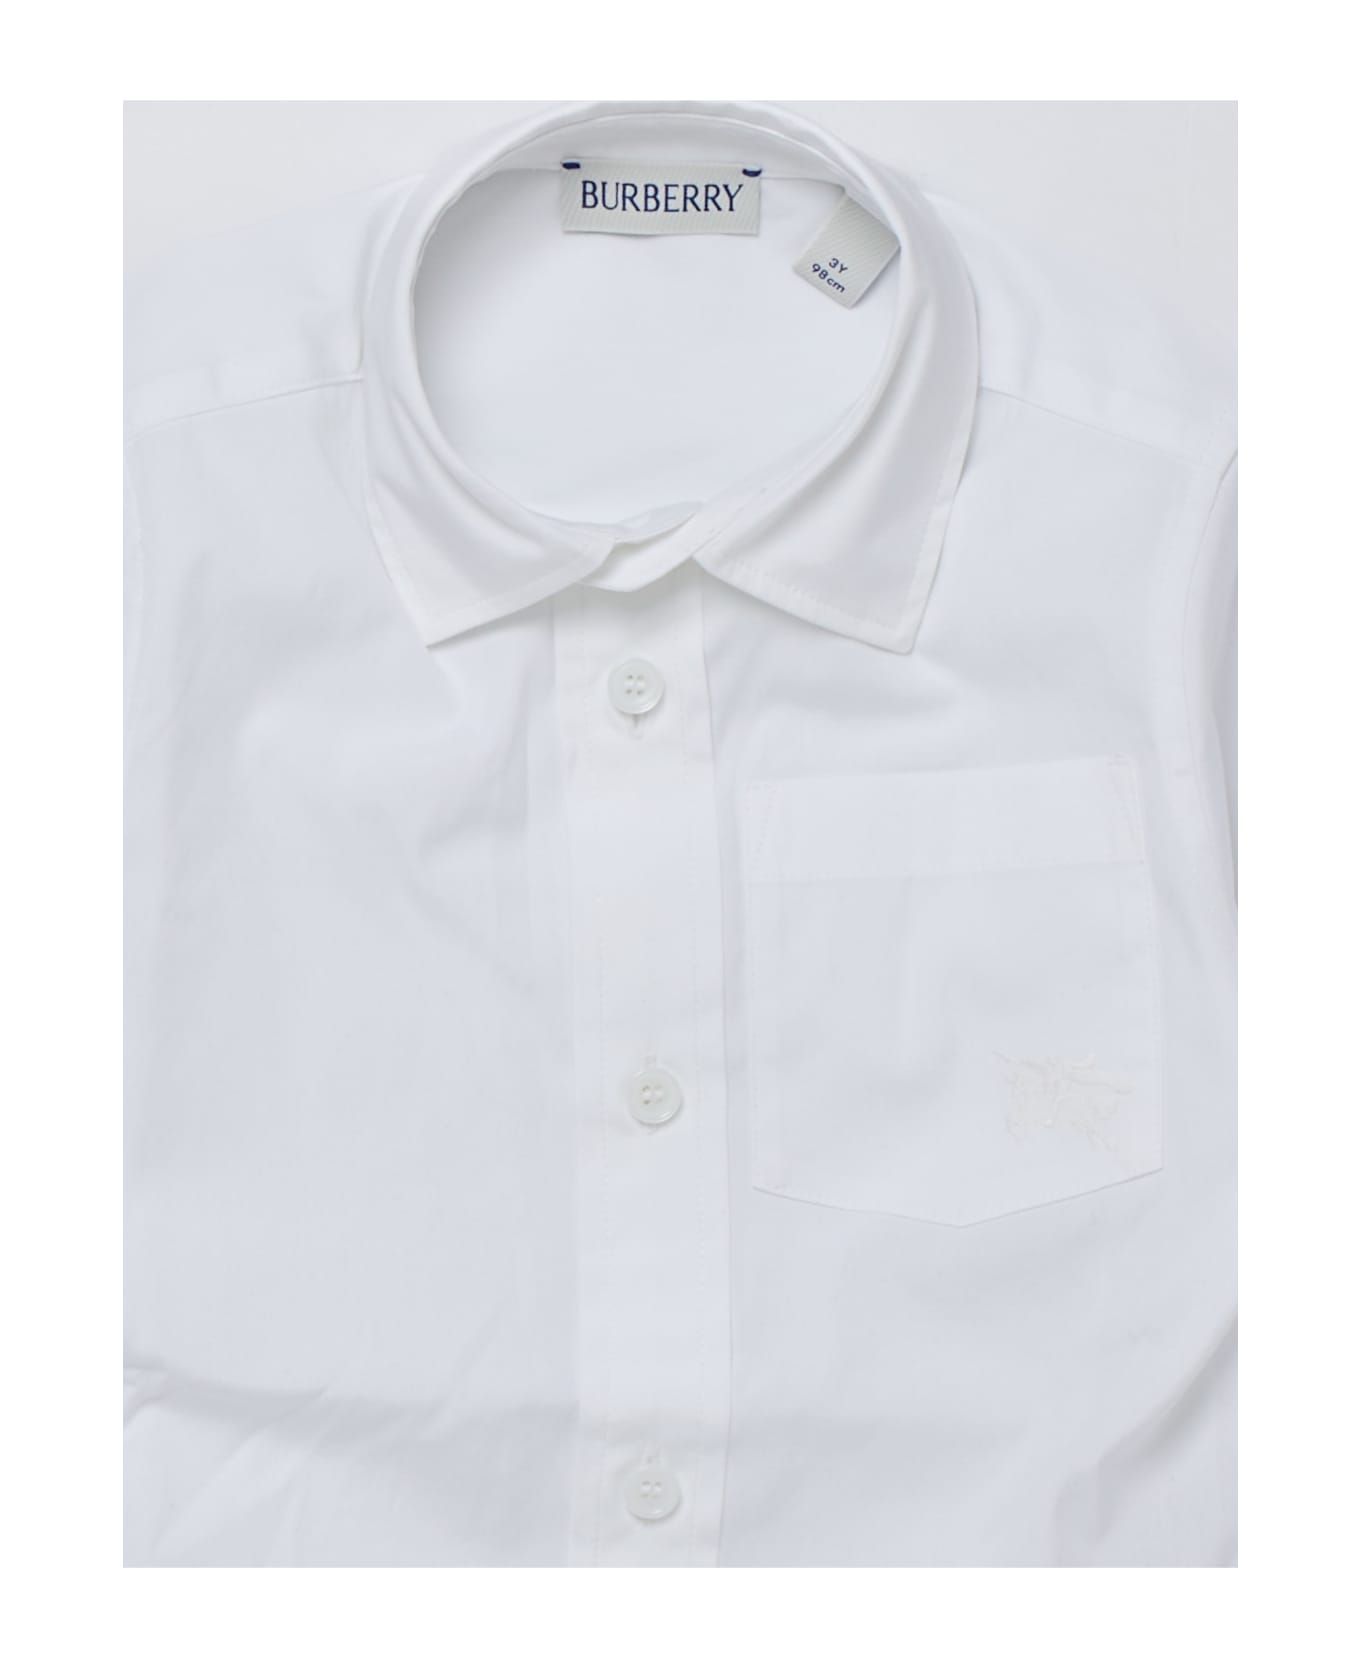 Burberry Owen Shirt Shirt - BIANCO シャツ